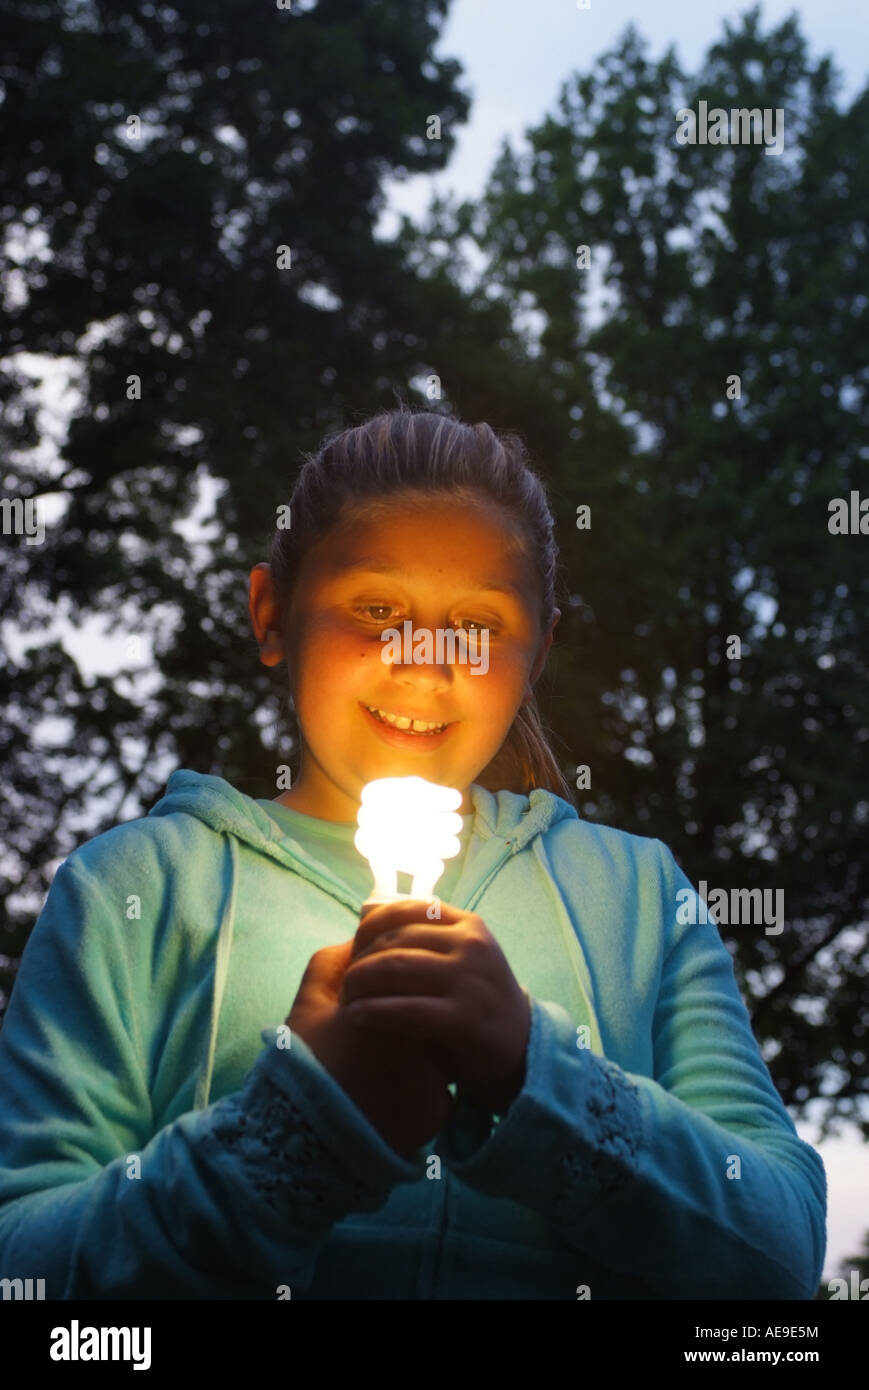 Mädchen im Freien eine fluoreszierende Energie Saver Glühlampe in ihren Händen hält Stockfoto